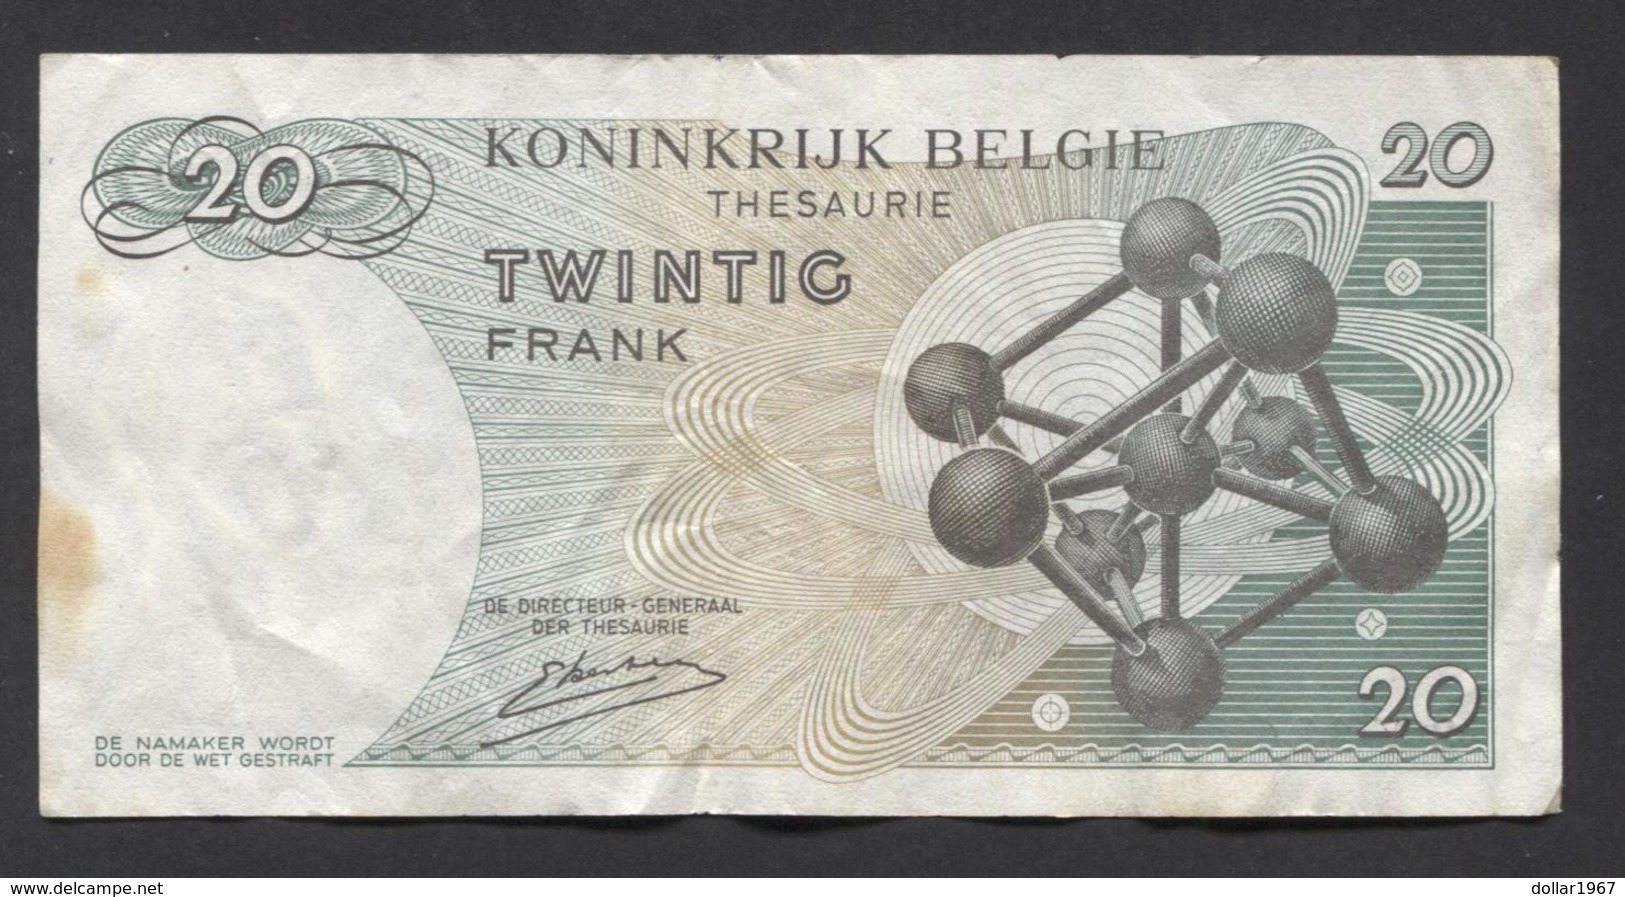 België Belgique Belgium 15 06 1964 -  20 Francs Atomium Baudouin. 3 Y 1243901 - 20 Francs